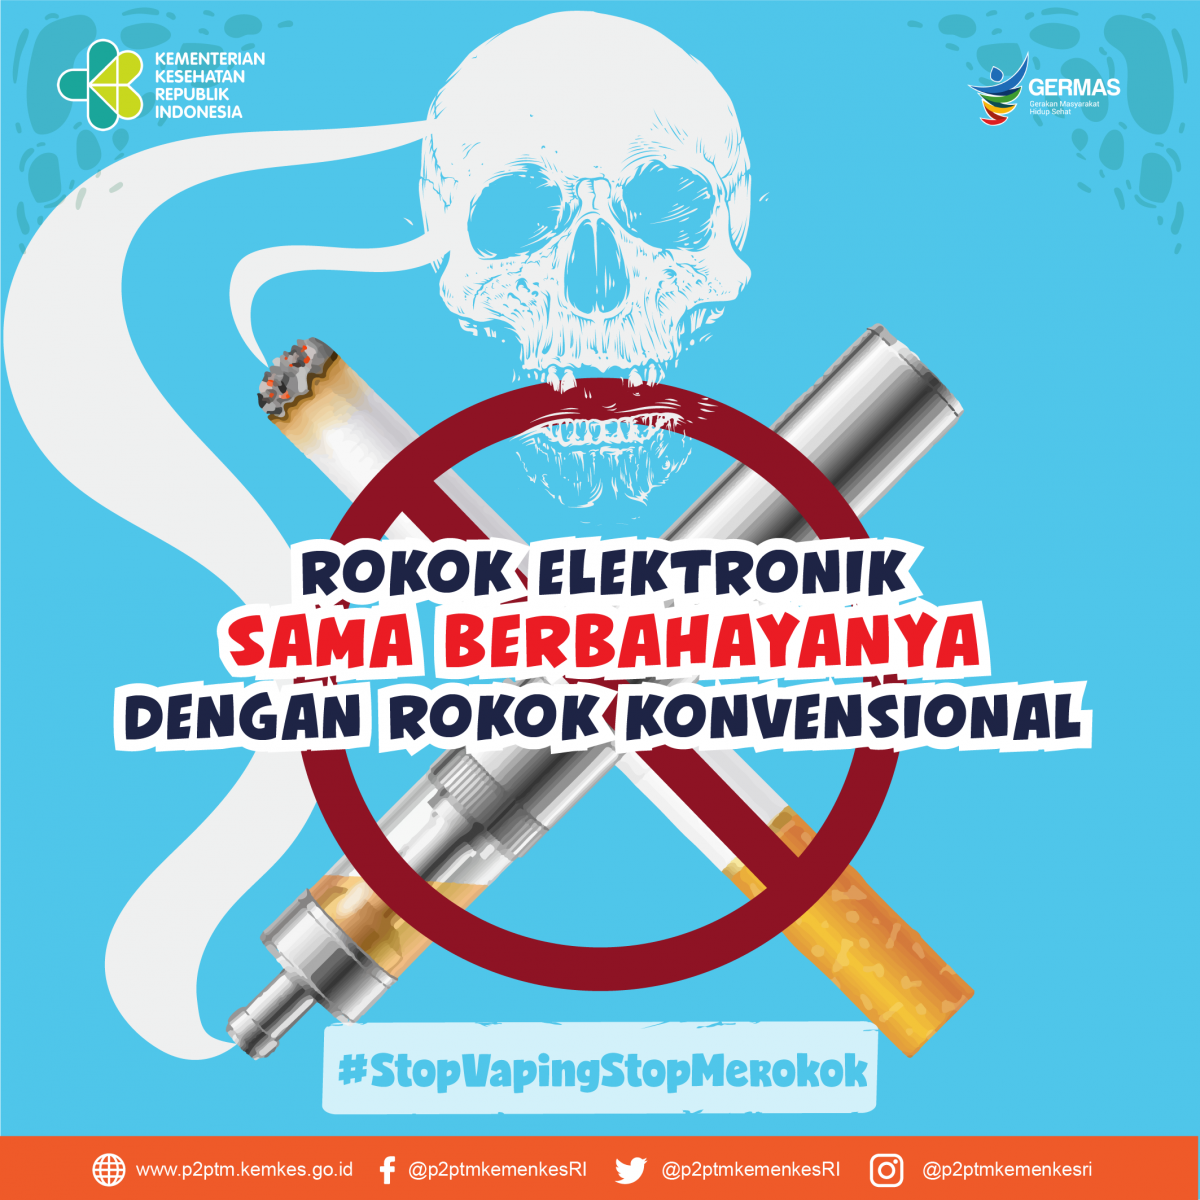 Rokok elektronik sama berbahayanya dengan rokok konvensional